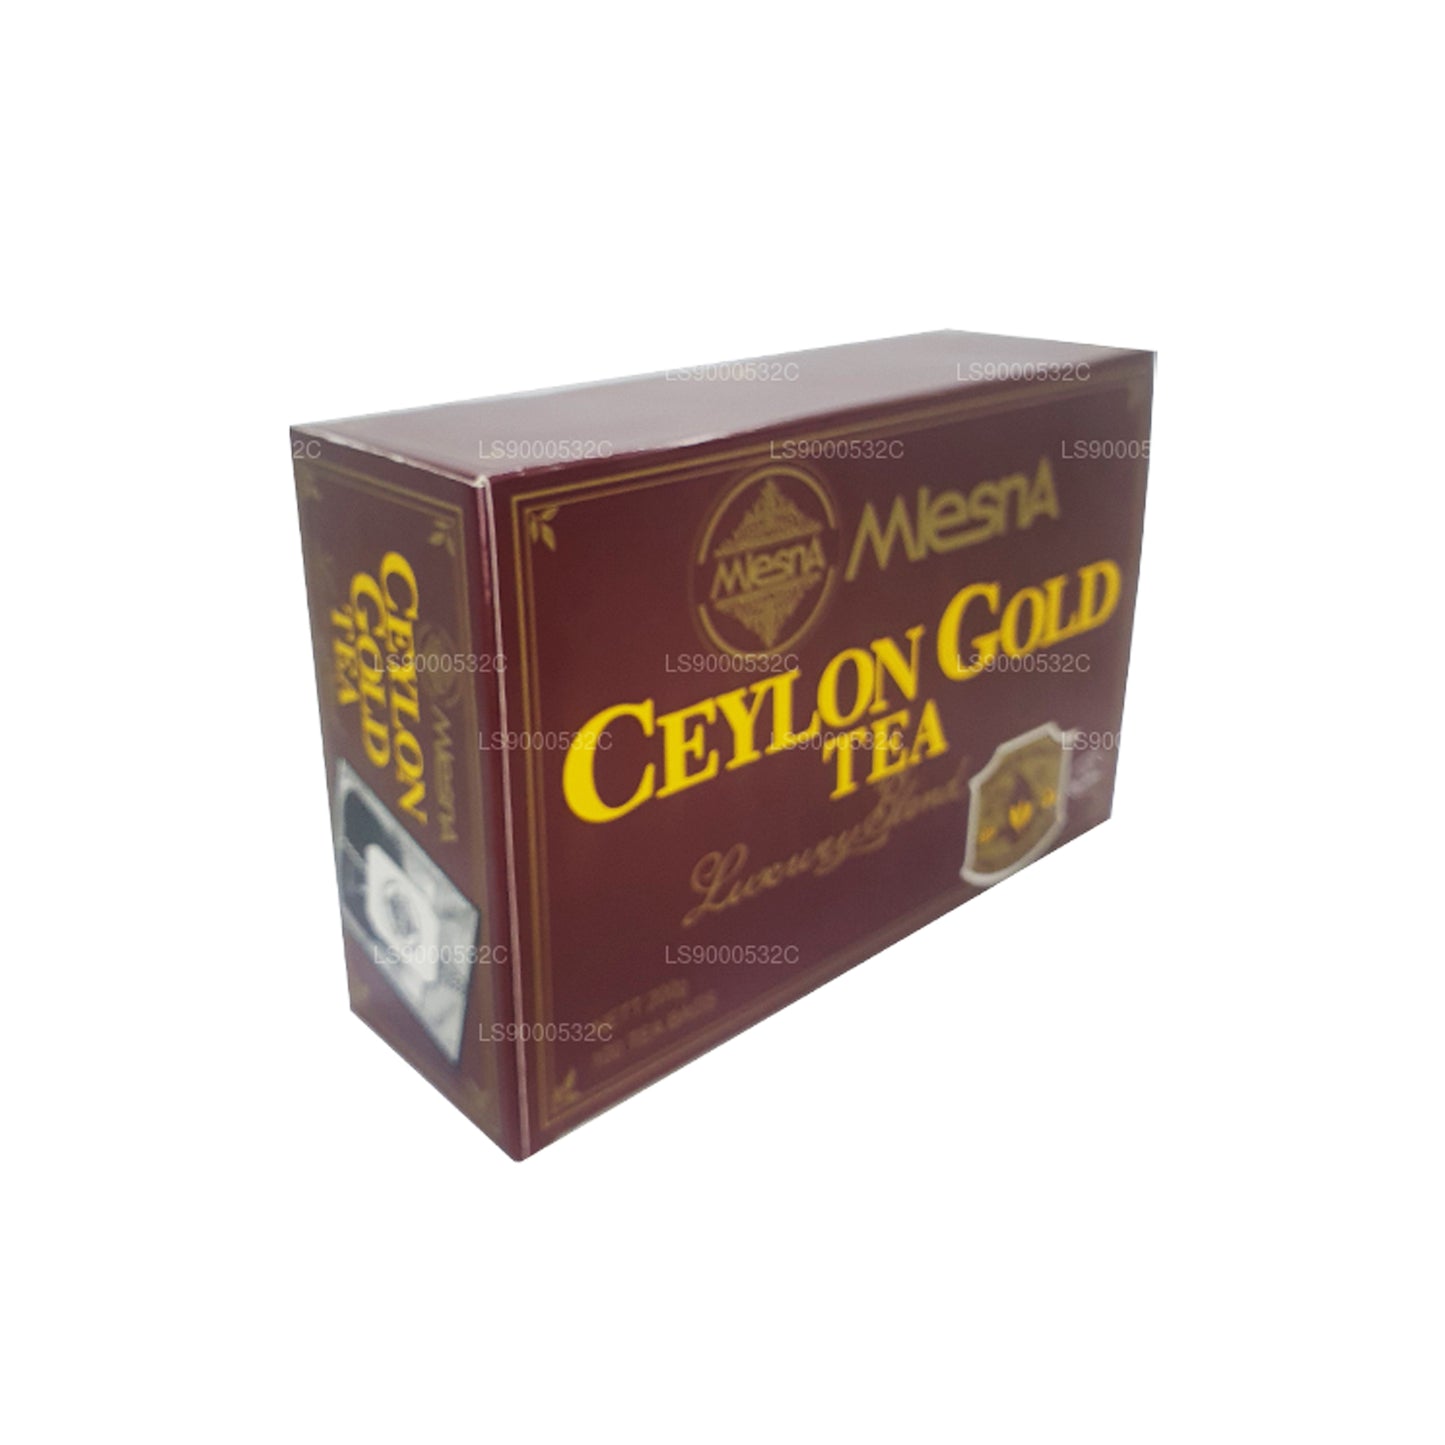 Чай Mlesna, цейлонское золото, 100 пакетиков (200 г), шнурок и бирка